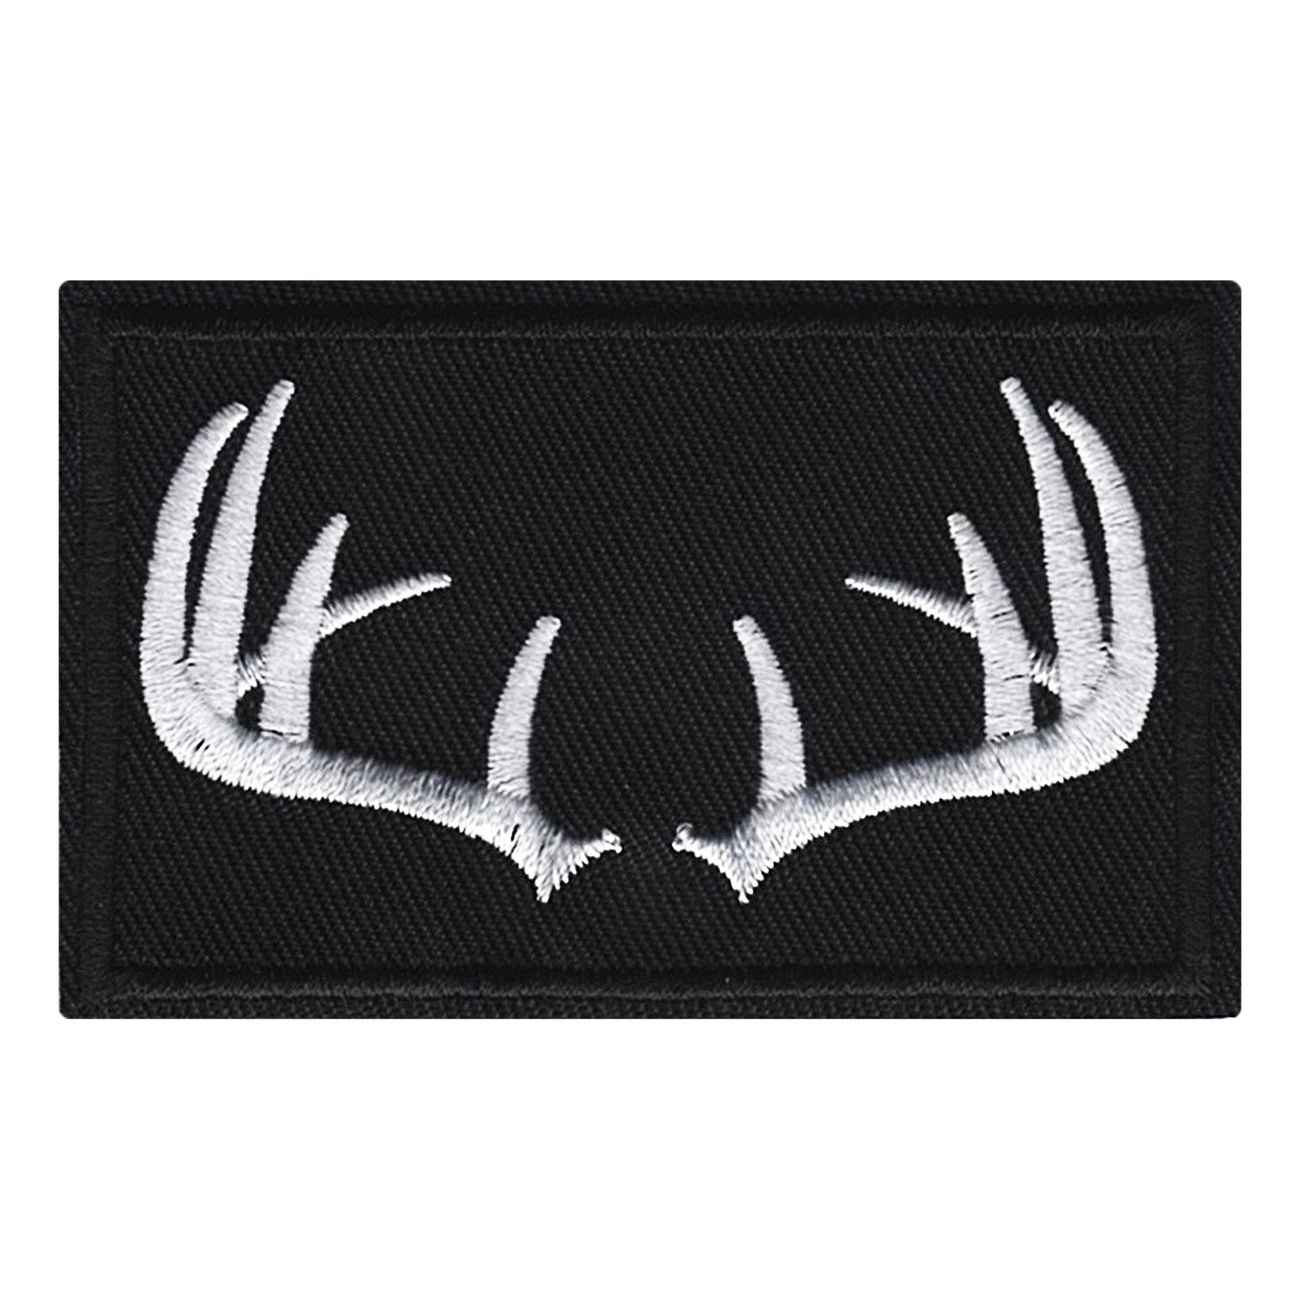 tygmarke-horn--antlers-97750-1